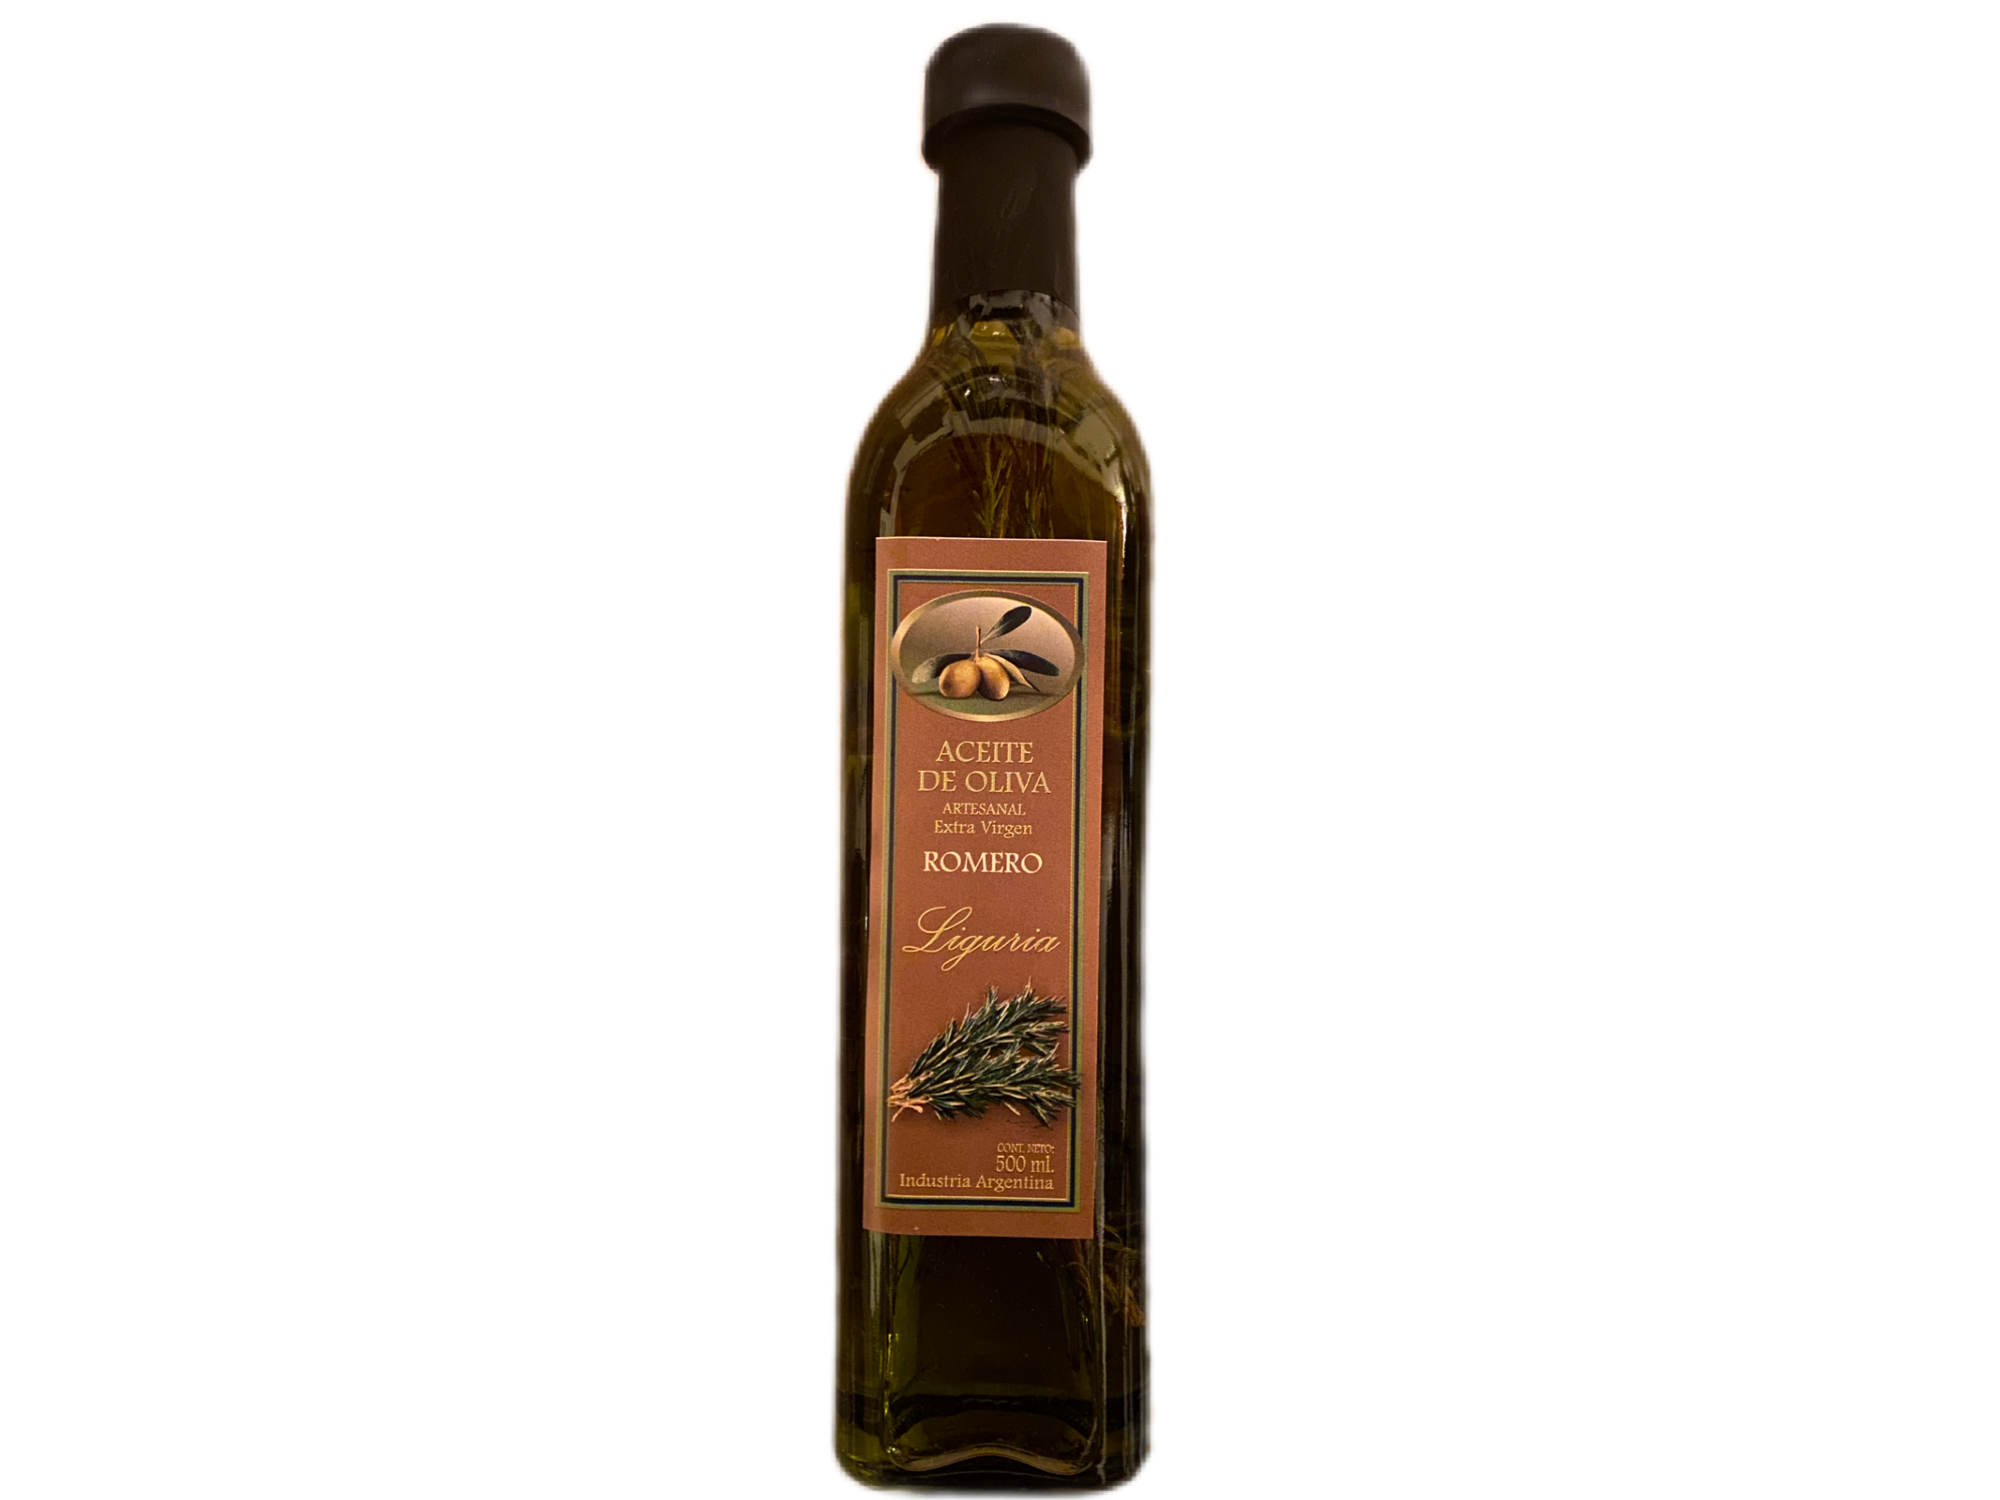 Aceite de oliva saborizado ROMERO